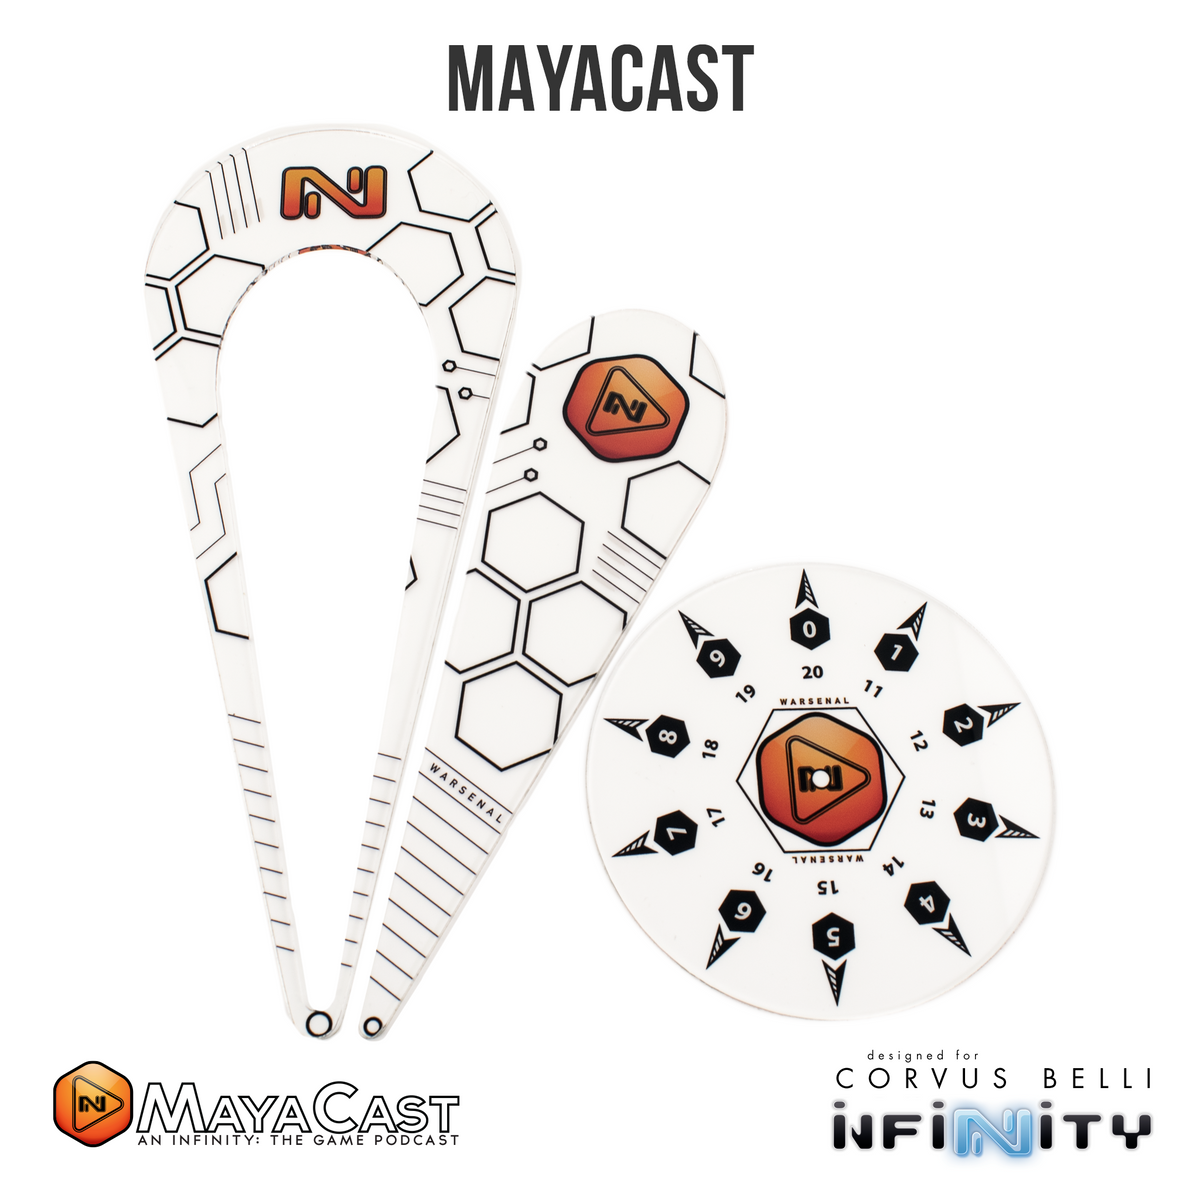 Plantillas de soporte de MayaCast 